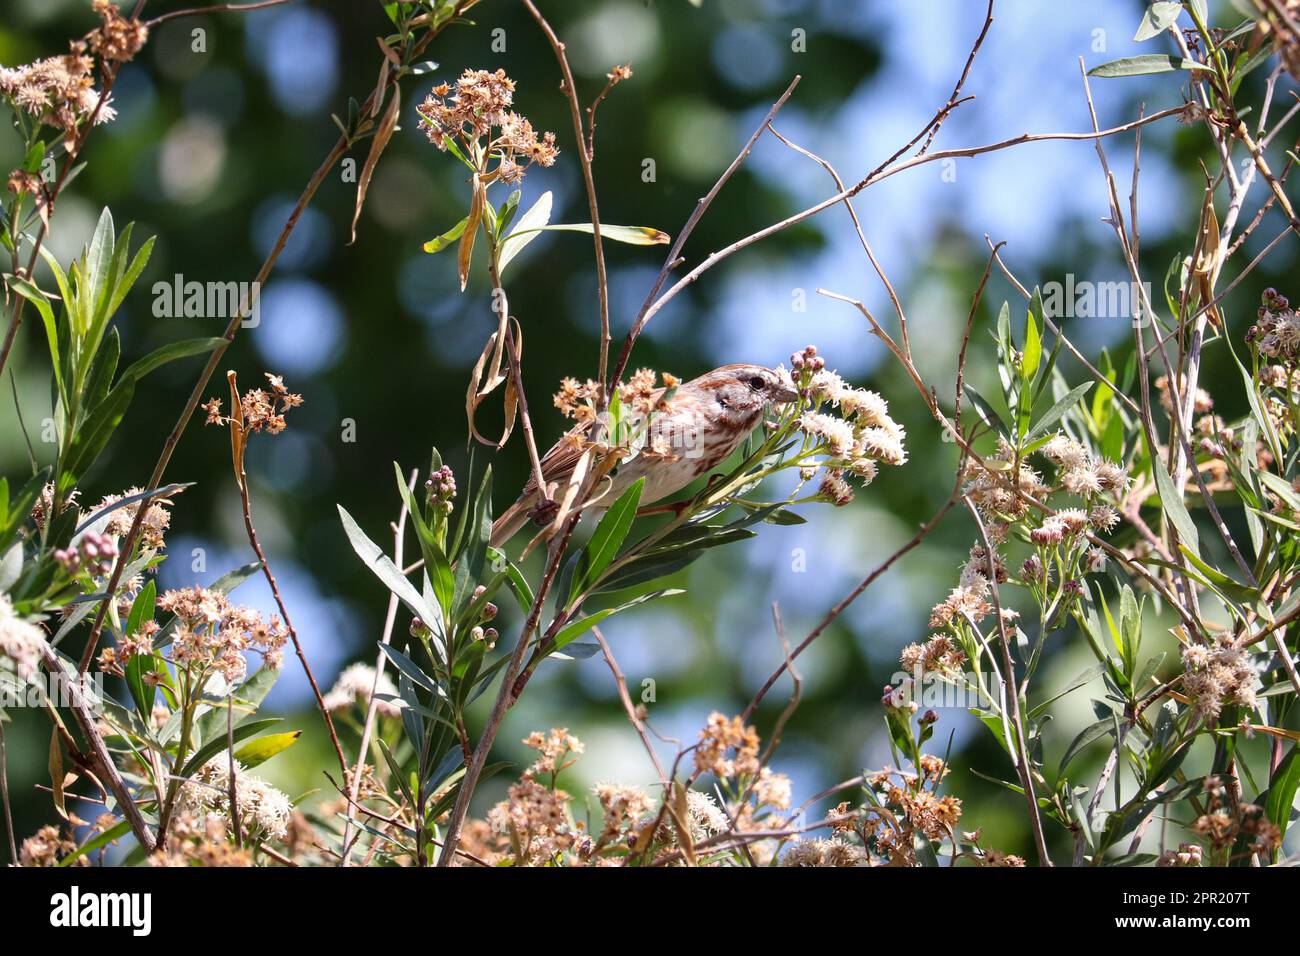 Song sparrow o Melospiza melodia posado en un arbusto gordo de mula en el parque oasis de veteranos en Arizona. Foto de stock